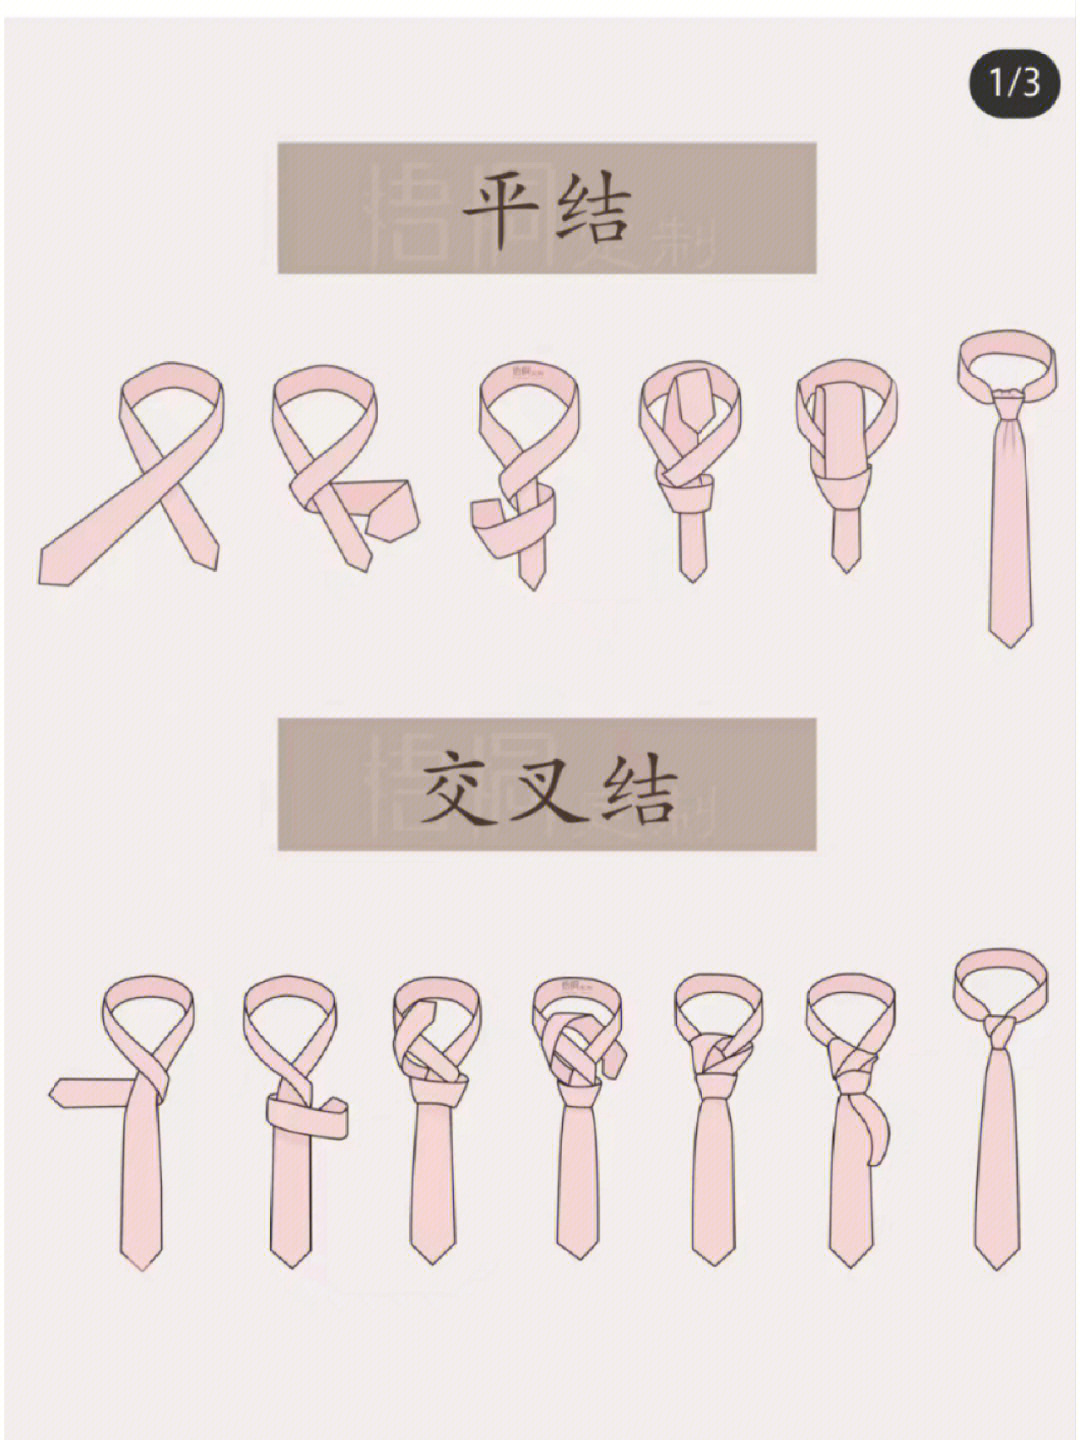 上海西服定制超实用领带打法实用大全